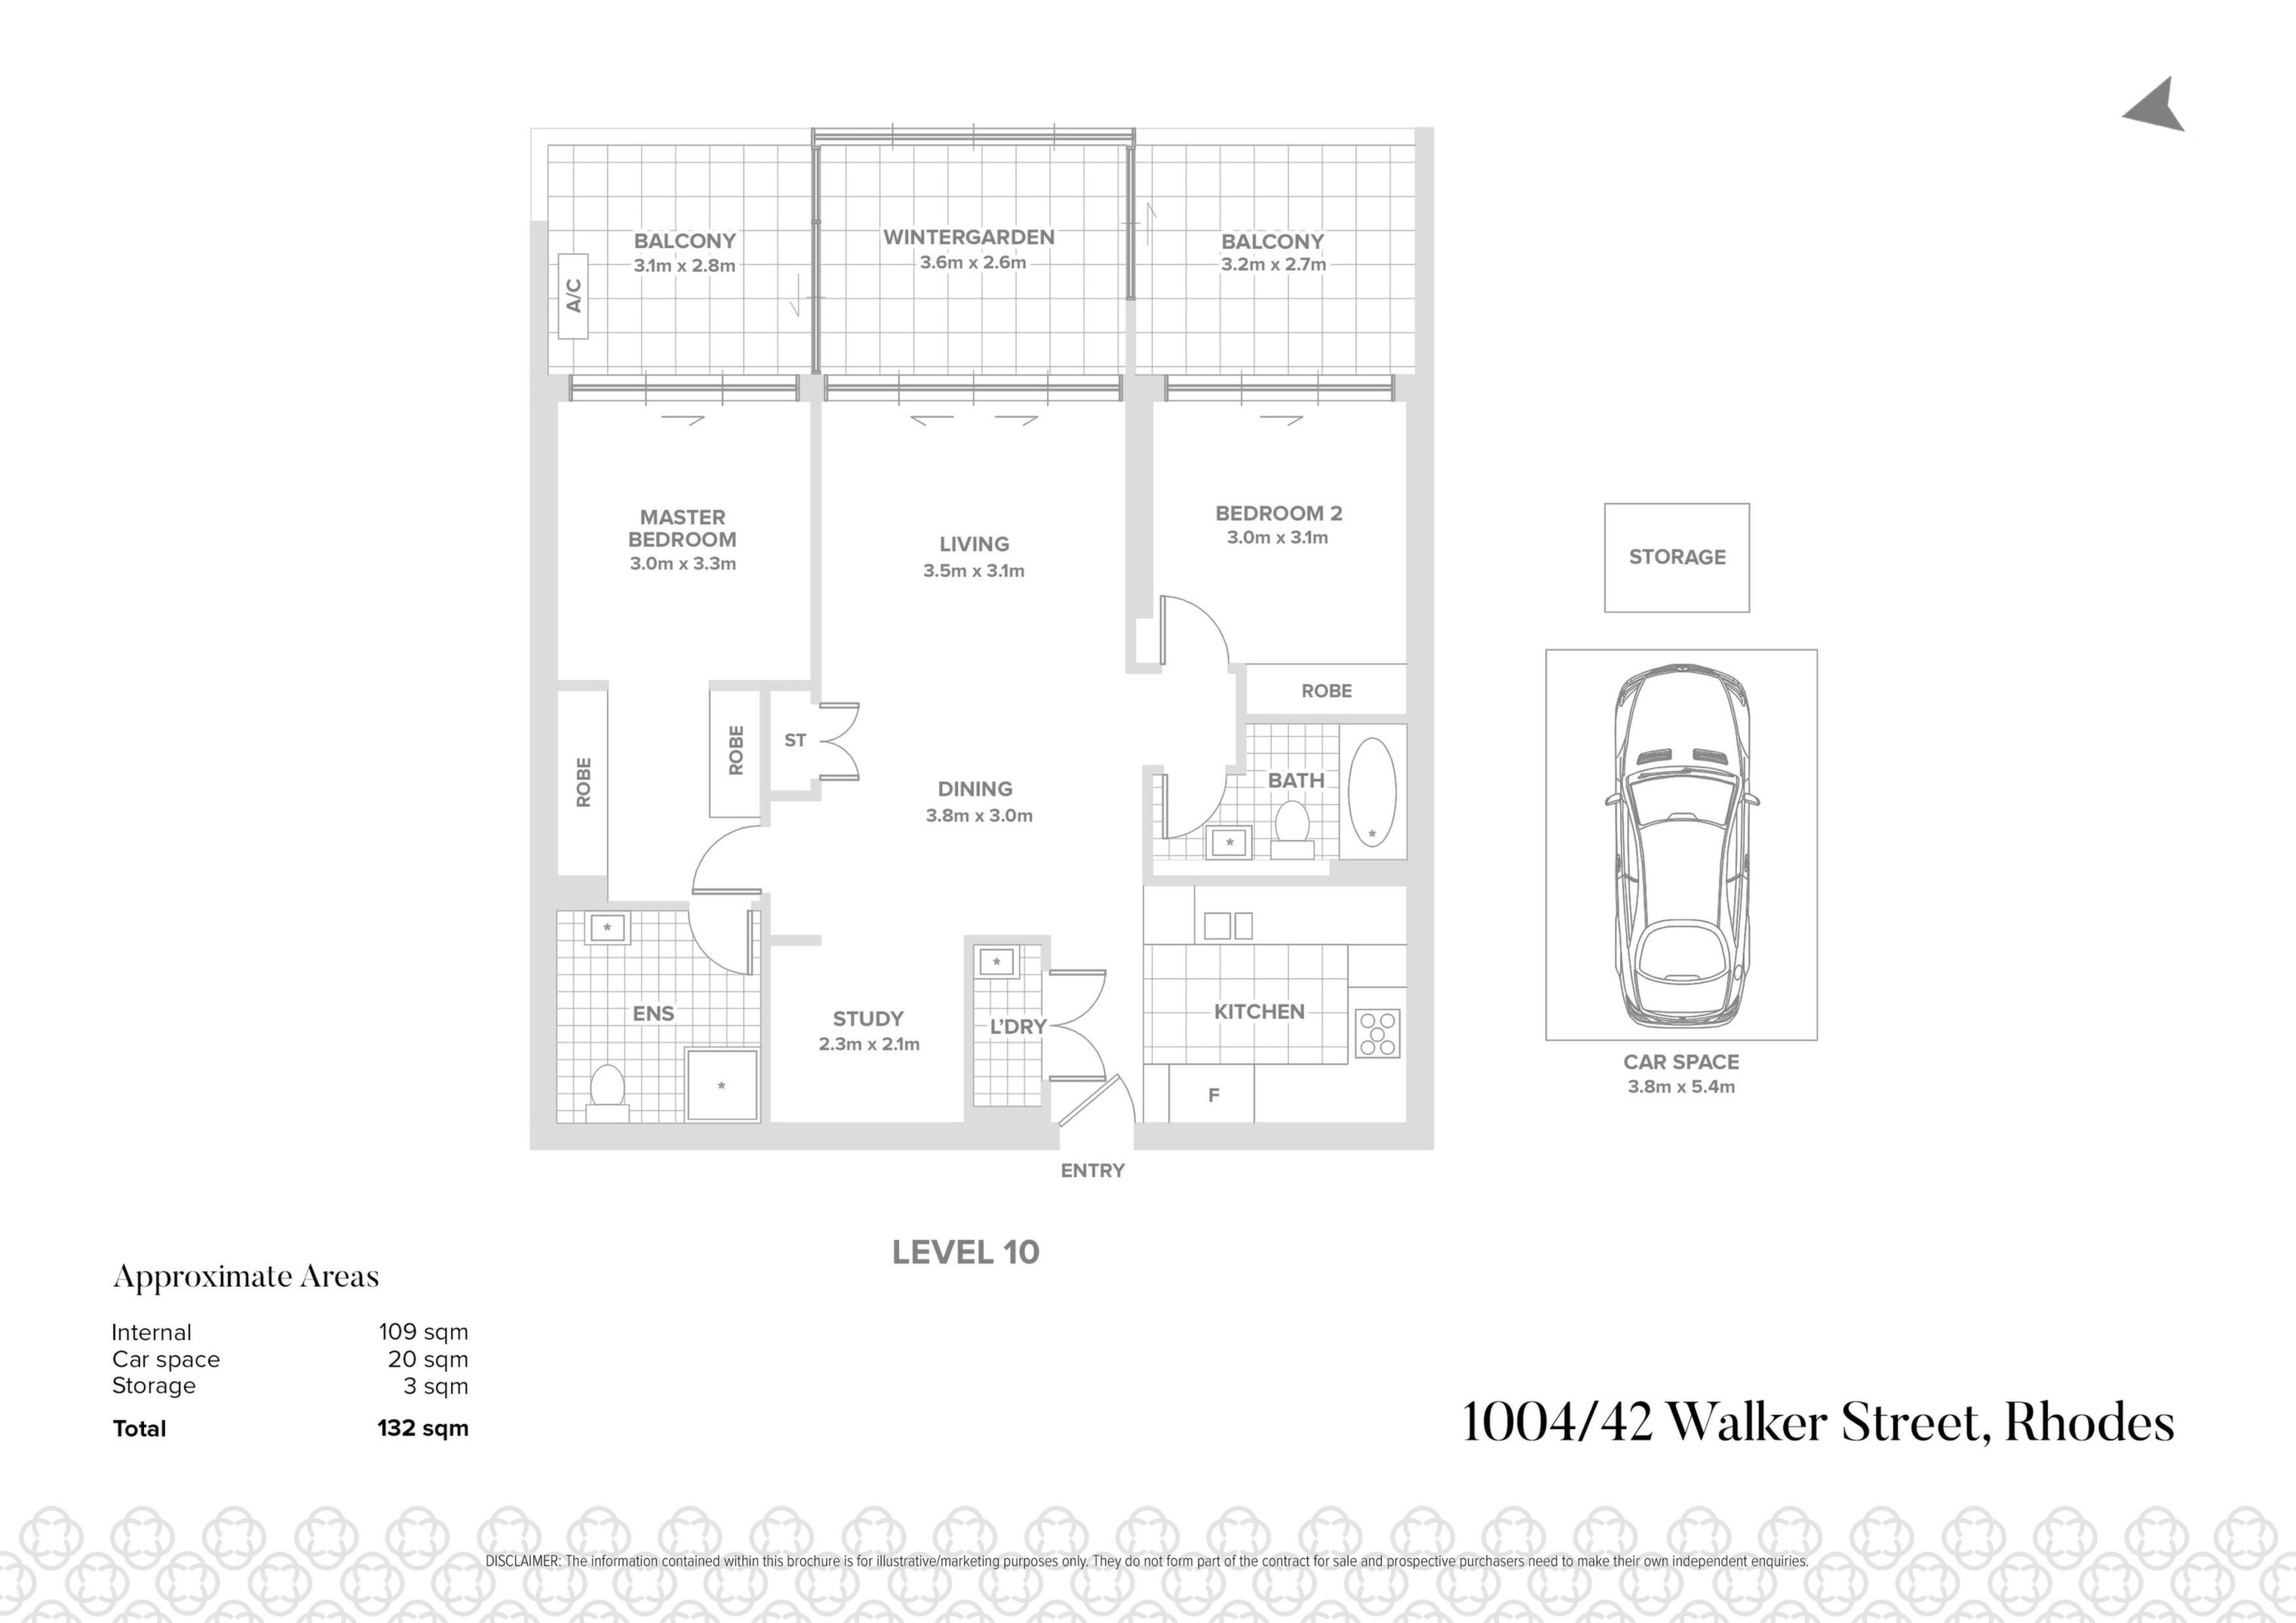 1004/42 Walker St, Rhodes Sold by Chidiac Realty - floorplan